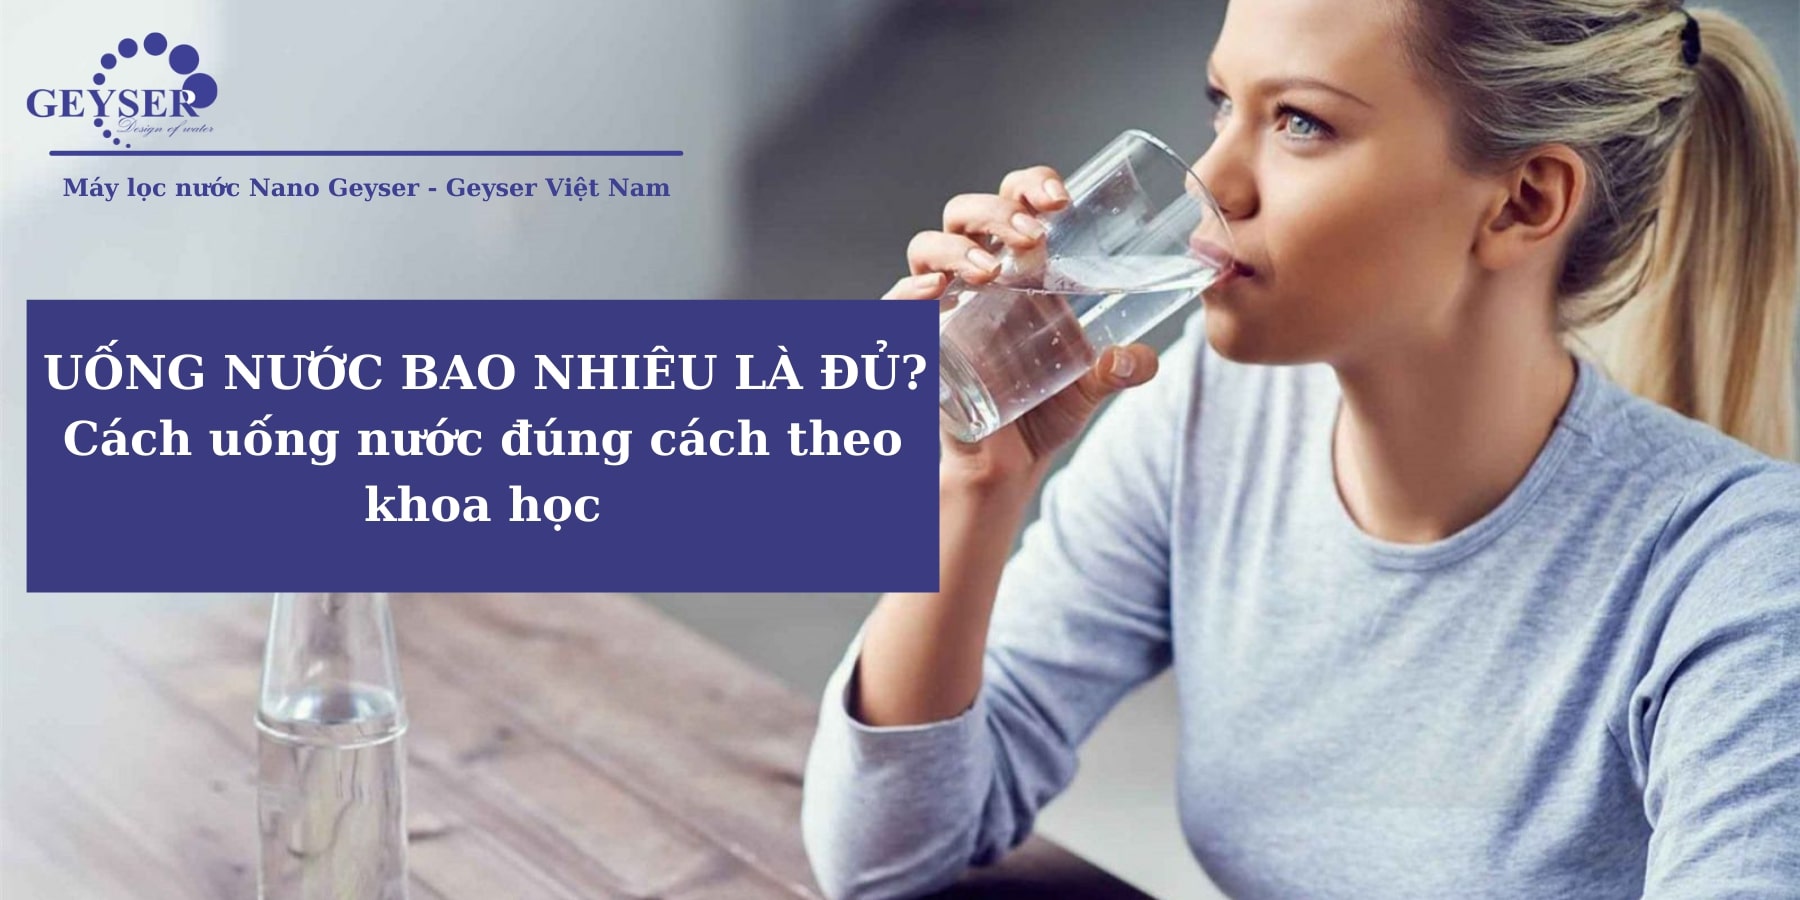 9 Cách uống nước đúng cách theo khoa học tốt cho sức khỏe